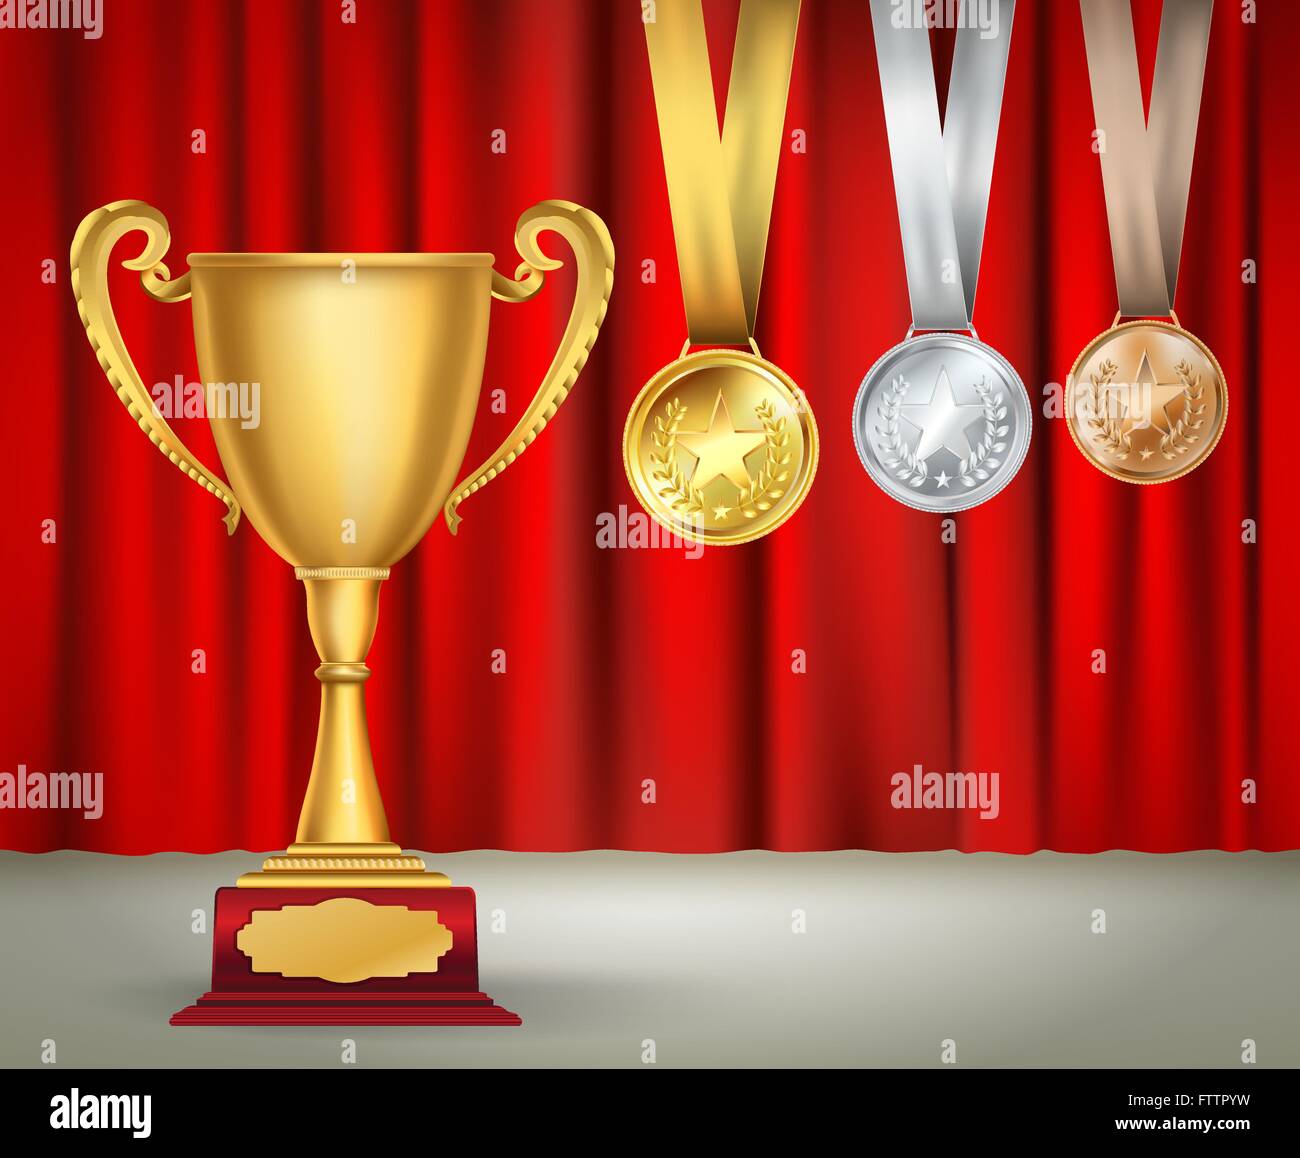 Goldene Trophäe Cup und Medaillensatz mit Bändern auf roten Vorhang Hintergrund. Sportwettbewerb prämiert Sammlung. Vektor-design Stock Vektor